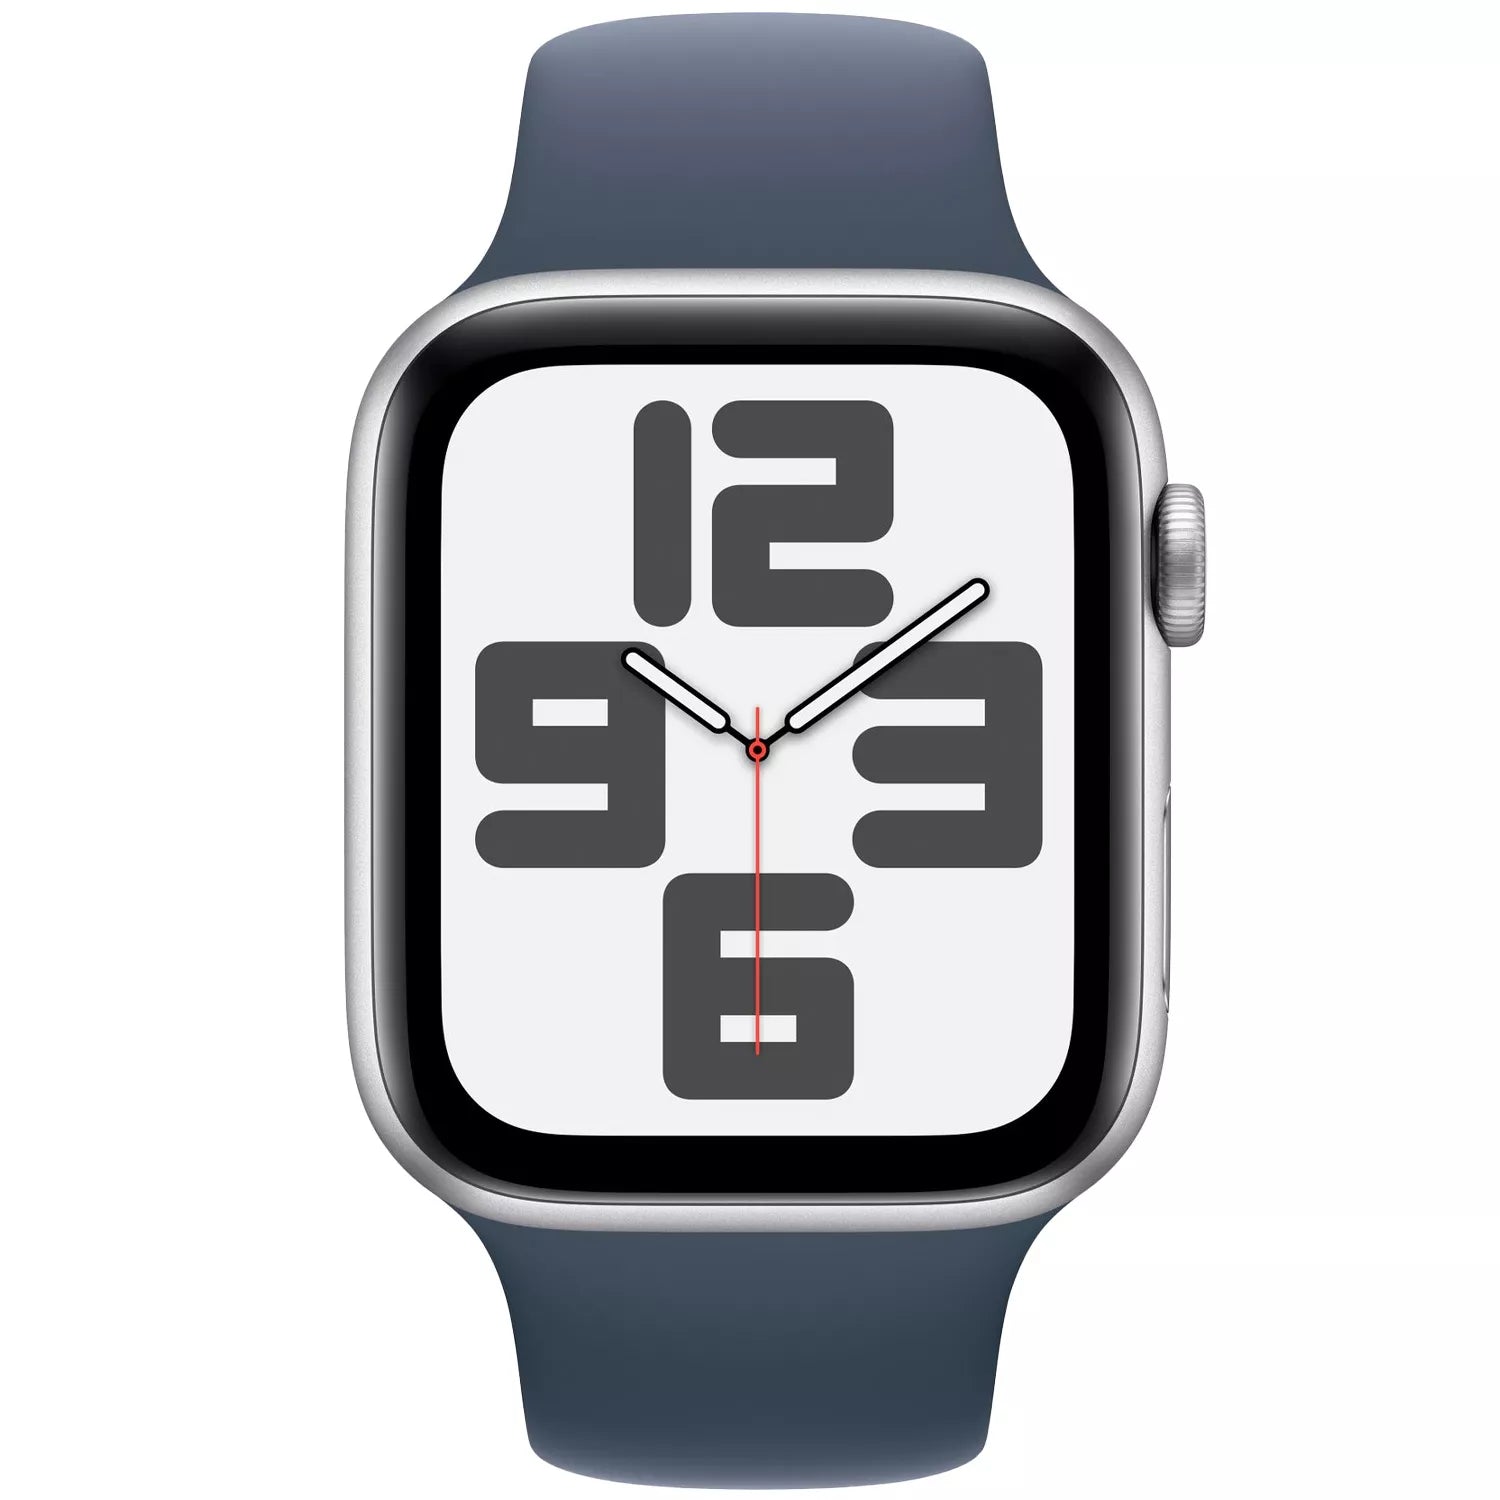 経済制裁Apple Watch se シルバー44mm GPS 時計